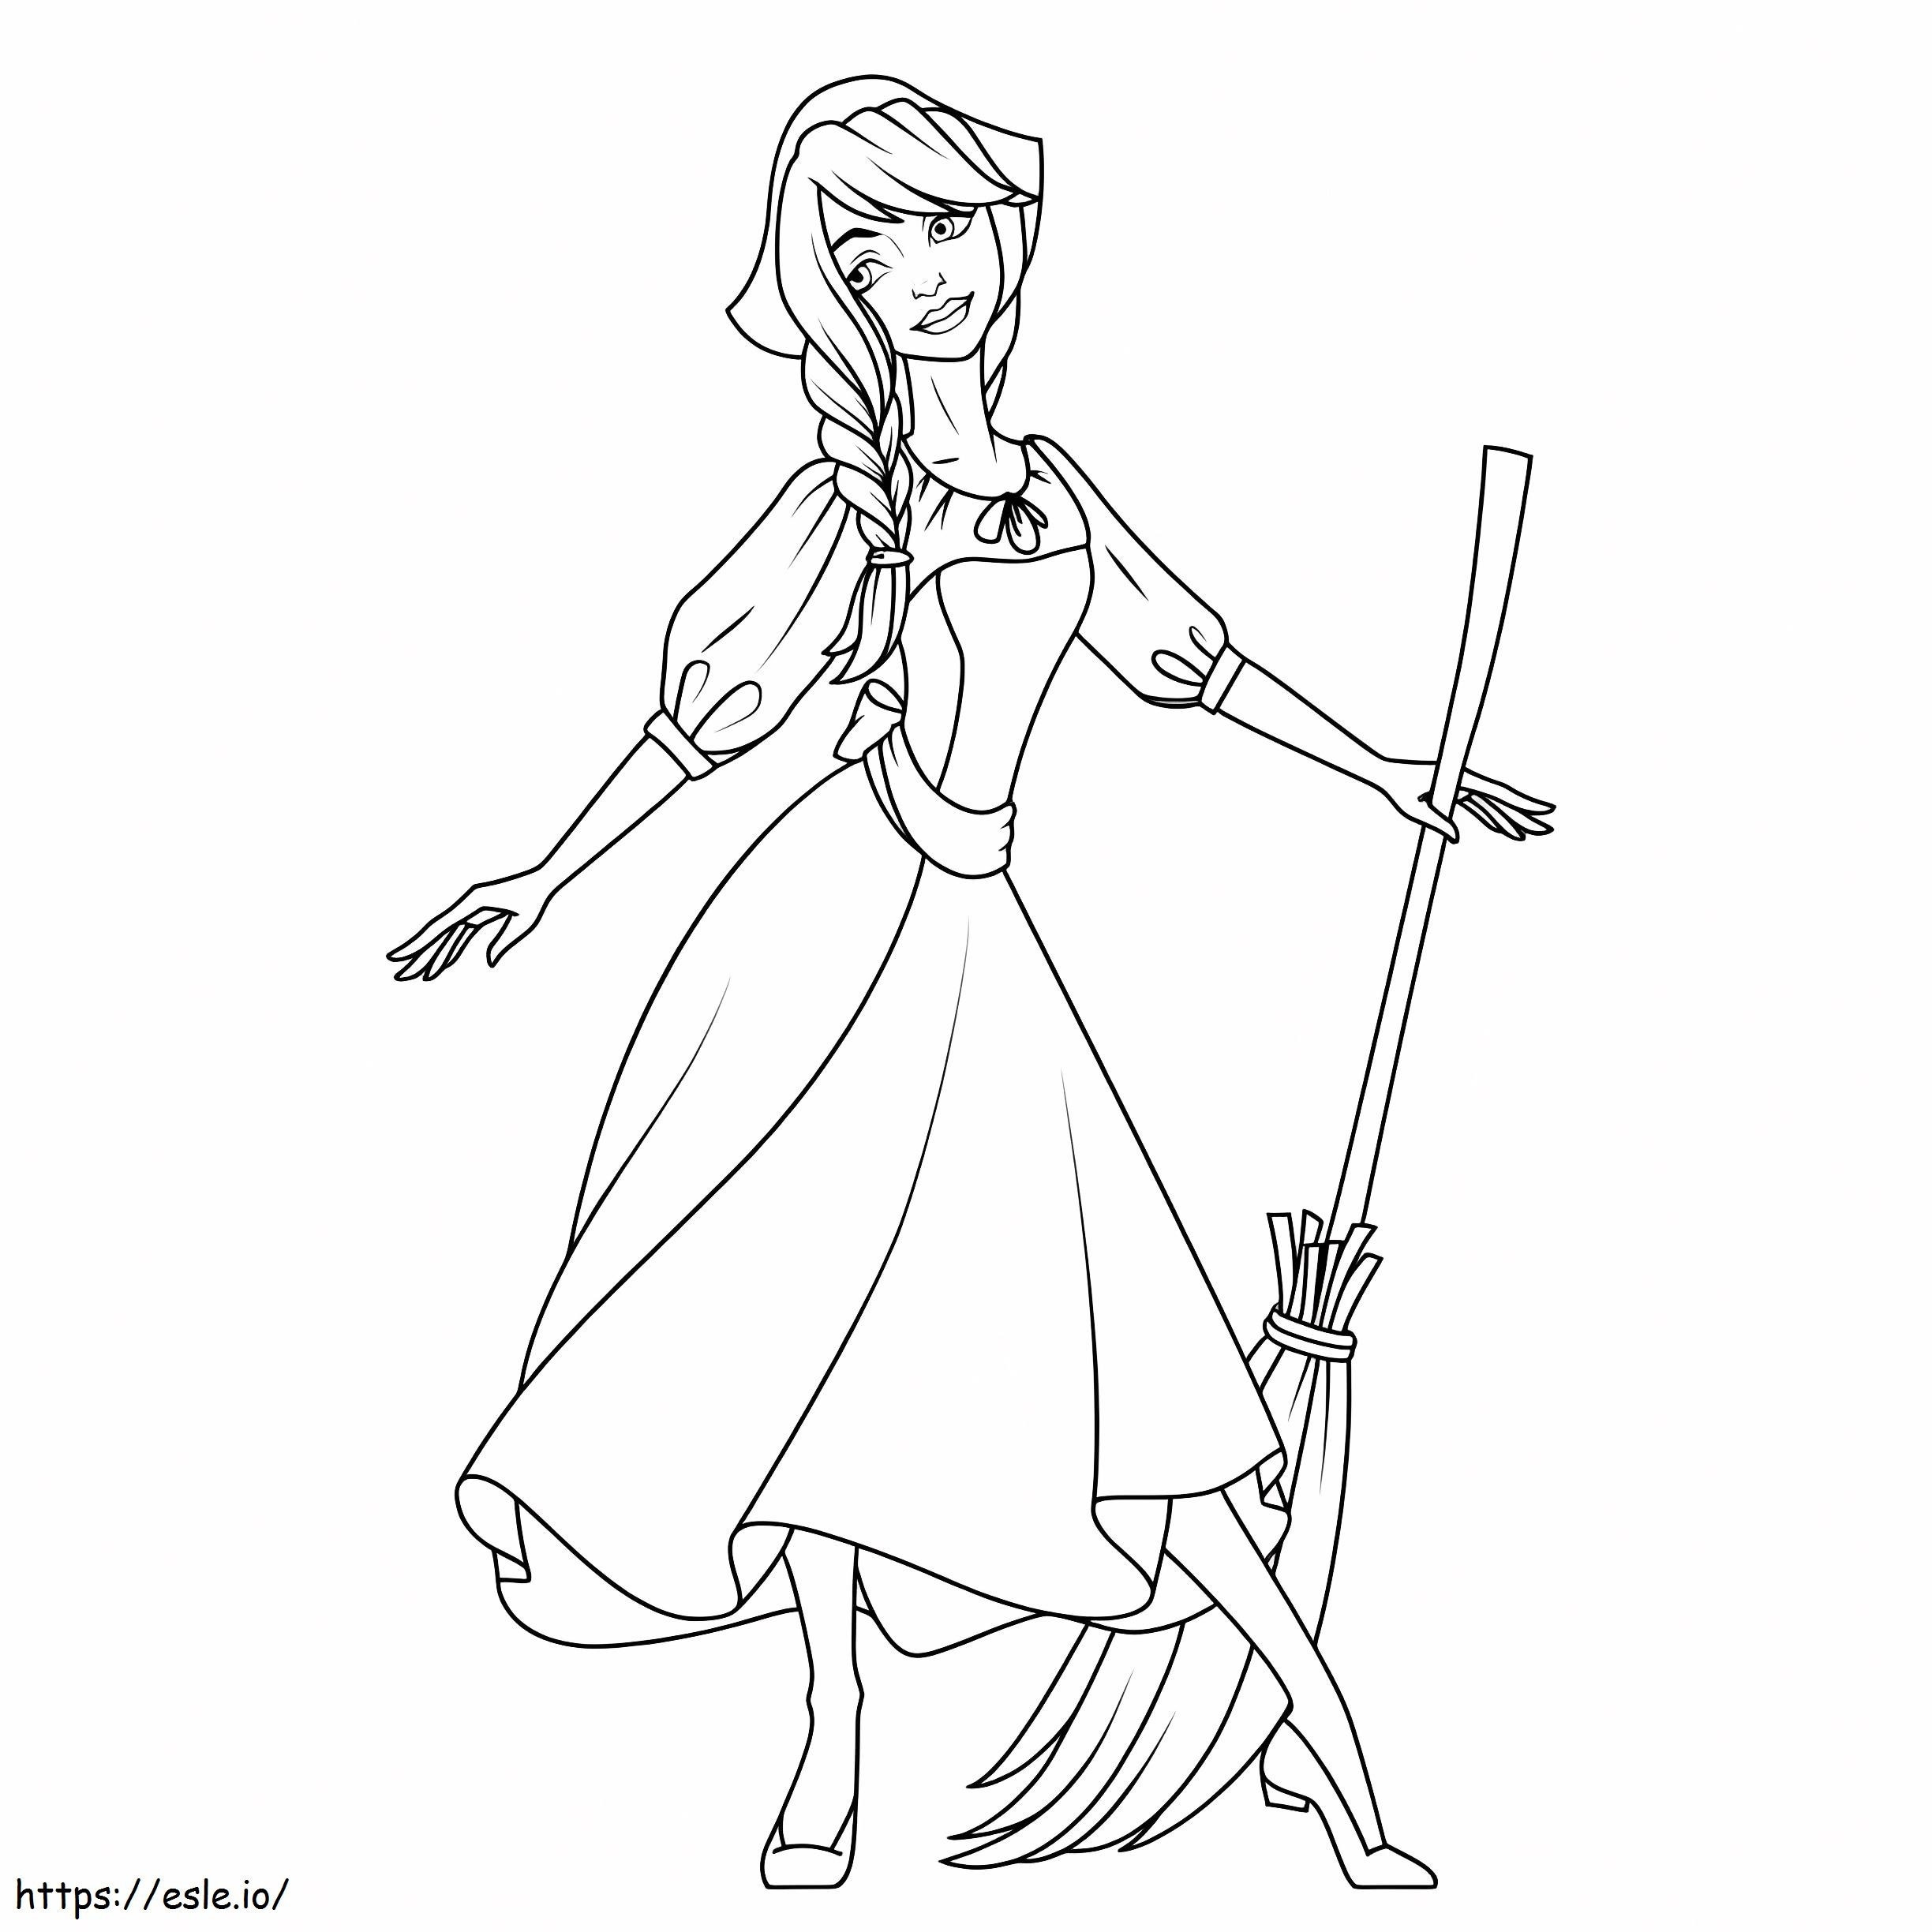 Cinderella With A Broom coloring page